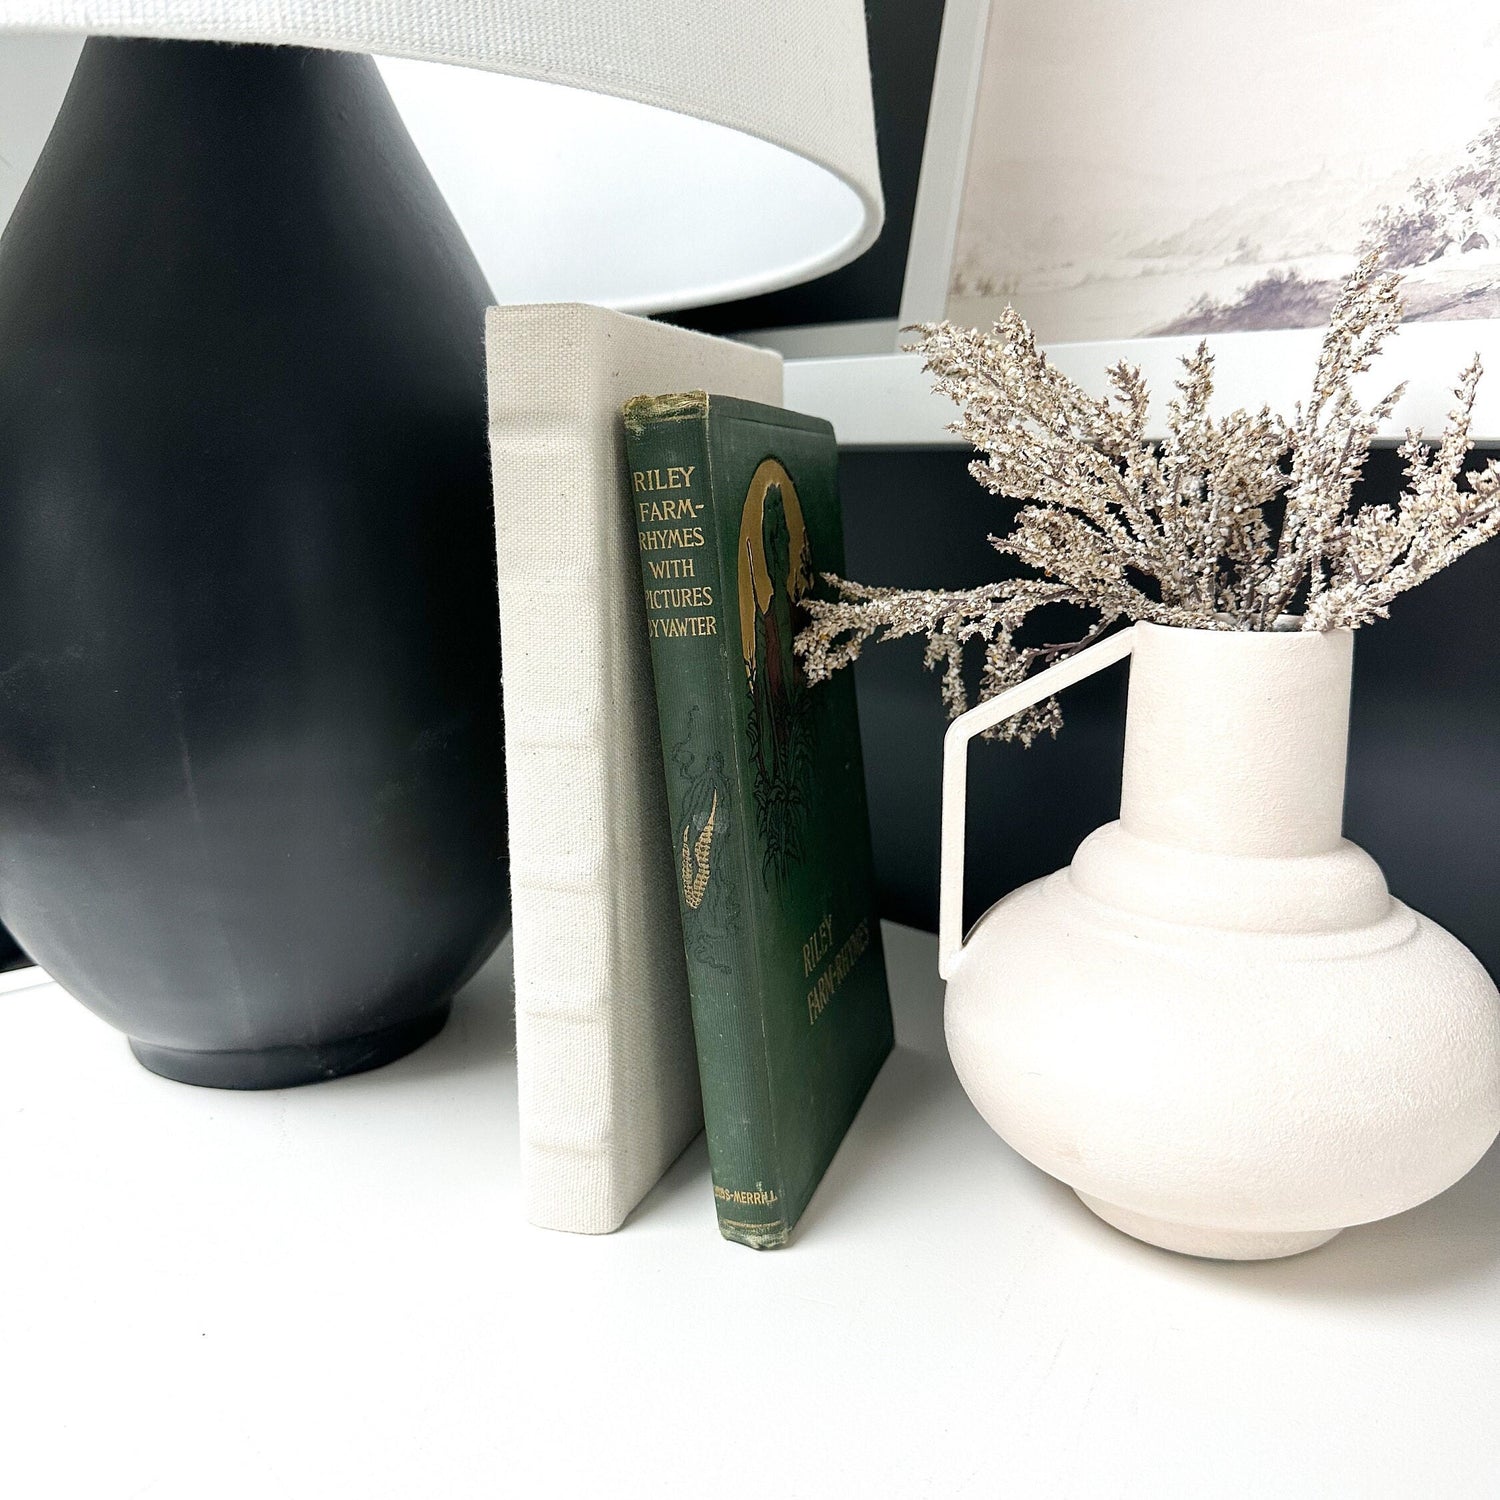 Green Shelf Decor, Book Set, Decorative Books for Shelf Decor, Modern Decor, Living Room Decor Ideas